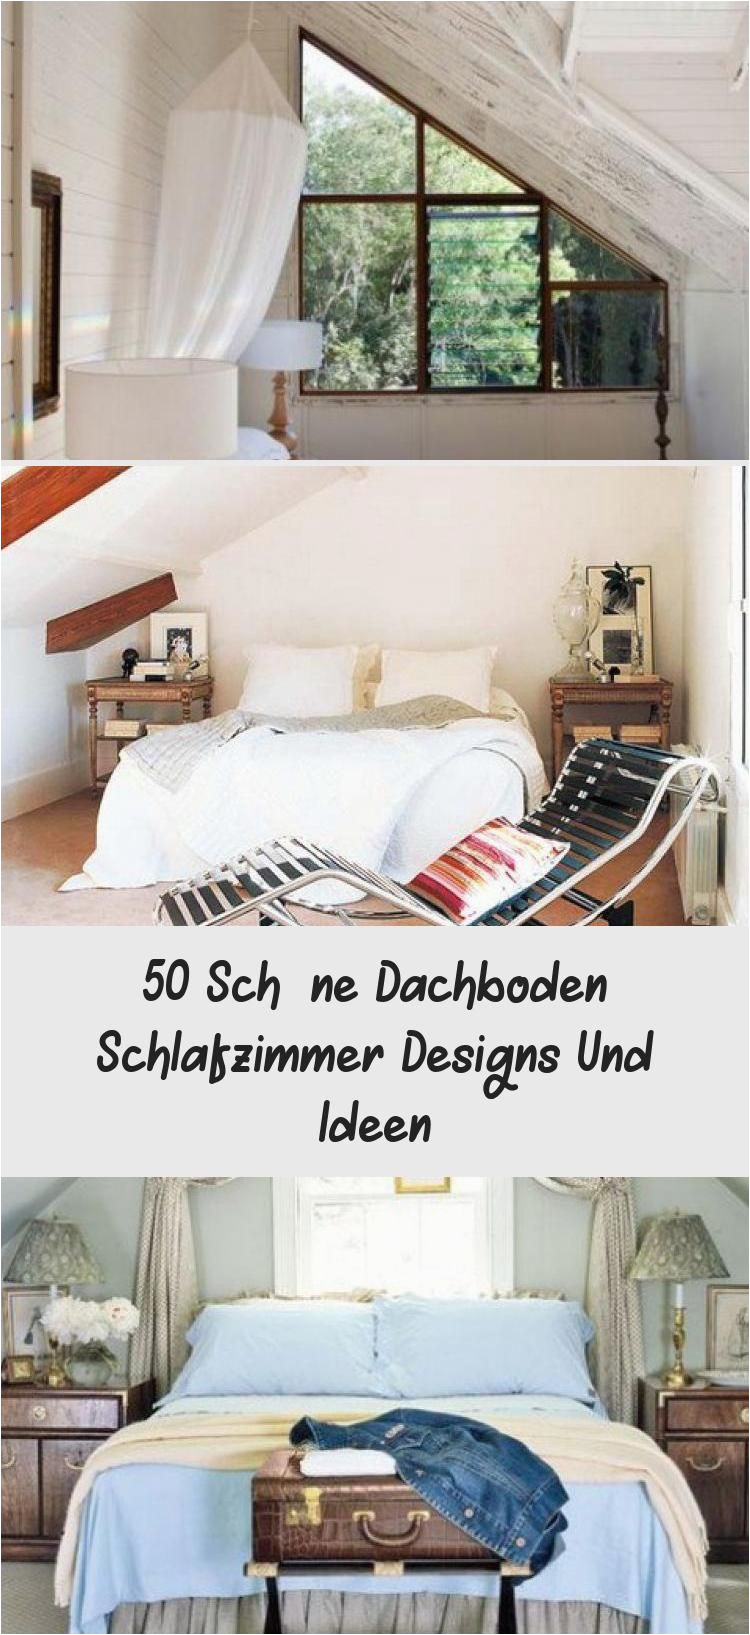 Schlafzimmer Deko Blog 50 Schöne Dachboden Schlafzimmer Designs Und Ideen